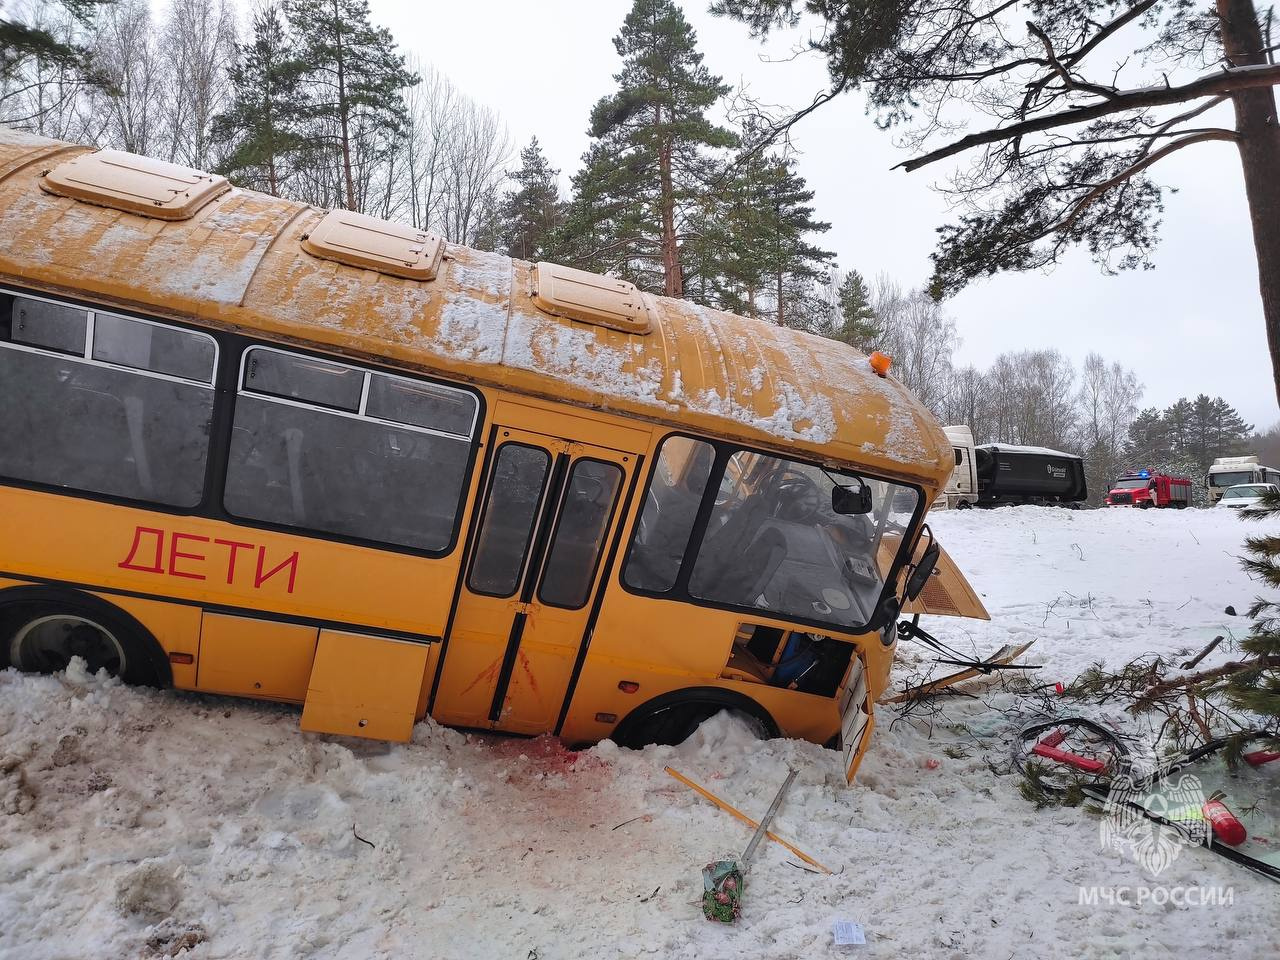 Автобус с детьми попал в ДТП на трассе Петербург — Псков. На снегу кровь, пострадавших — 17 человек